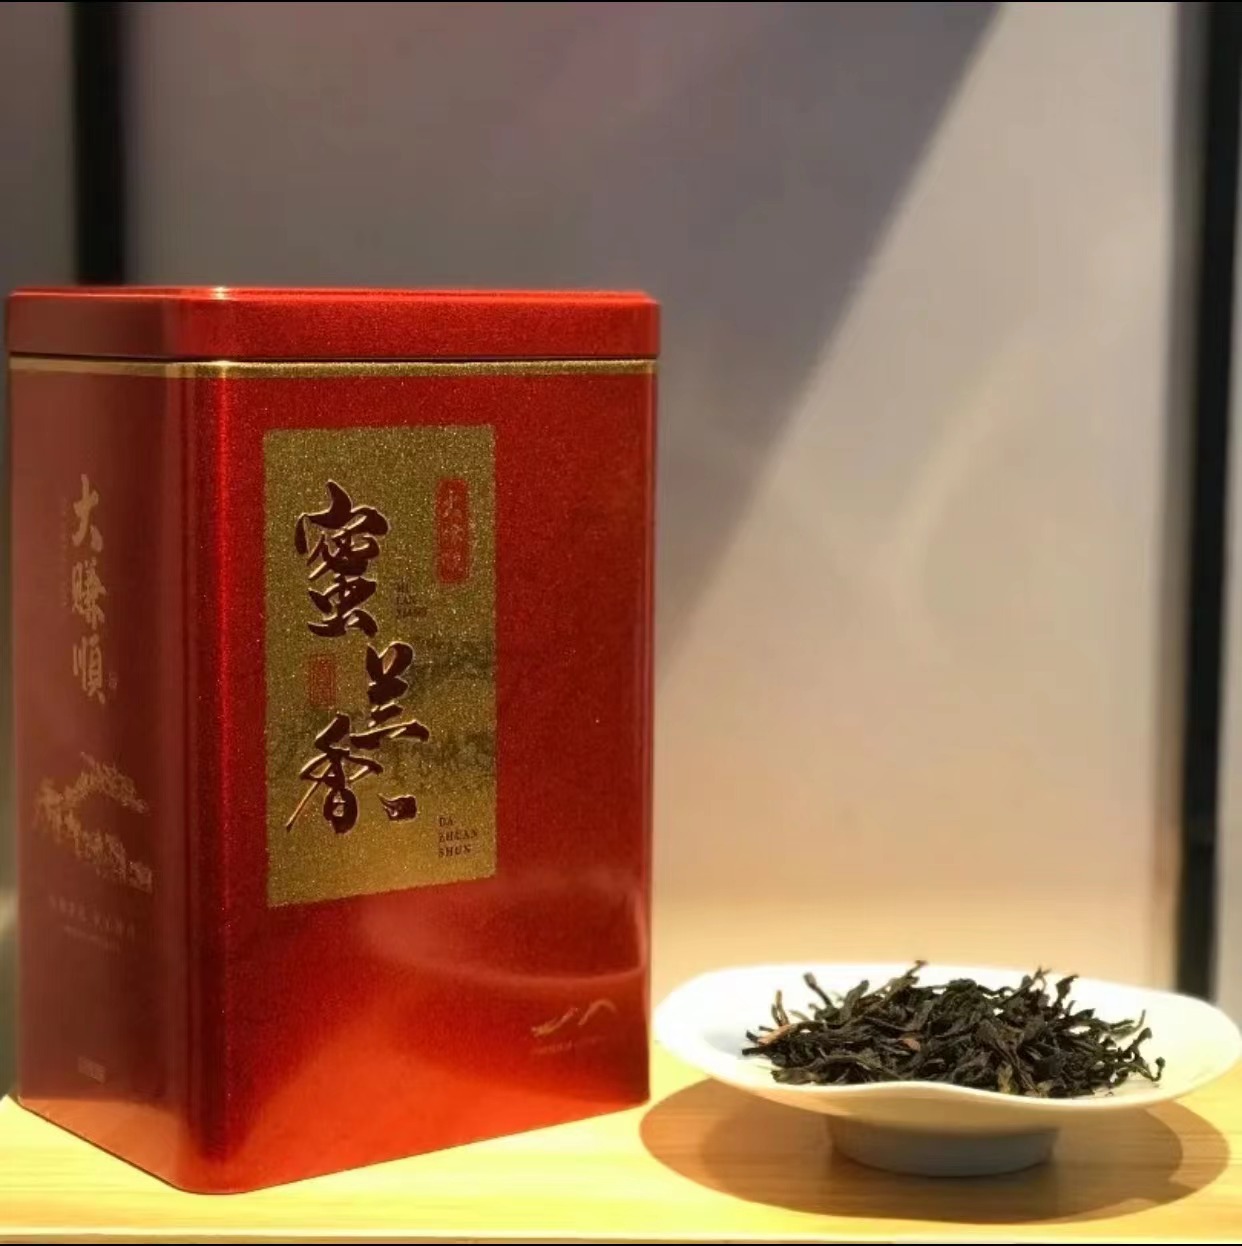 网红单丛口粮茶——蜜兰香单丛宋茶荟凤凰单丛茶250g/500g 250g